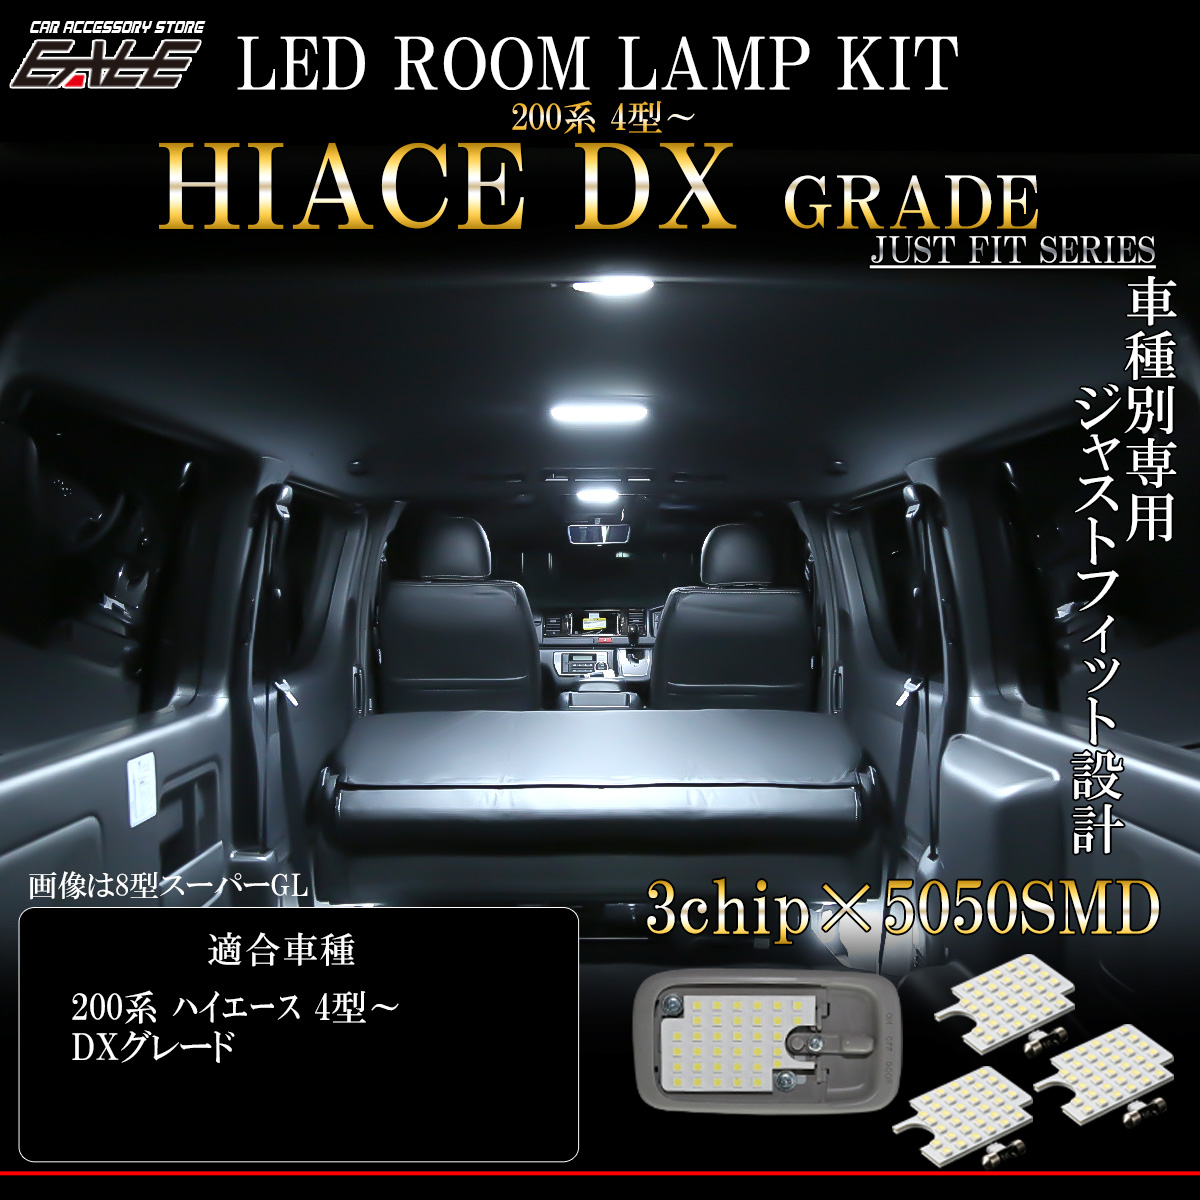 ネコポス可】 LED ルームランプ ハイエース DXグレード 4型 5型 6型 純白光 7000K ホワイト 専用設計 R-531